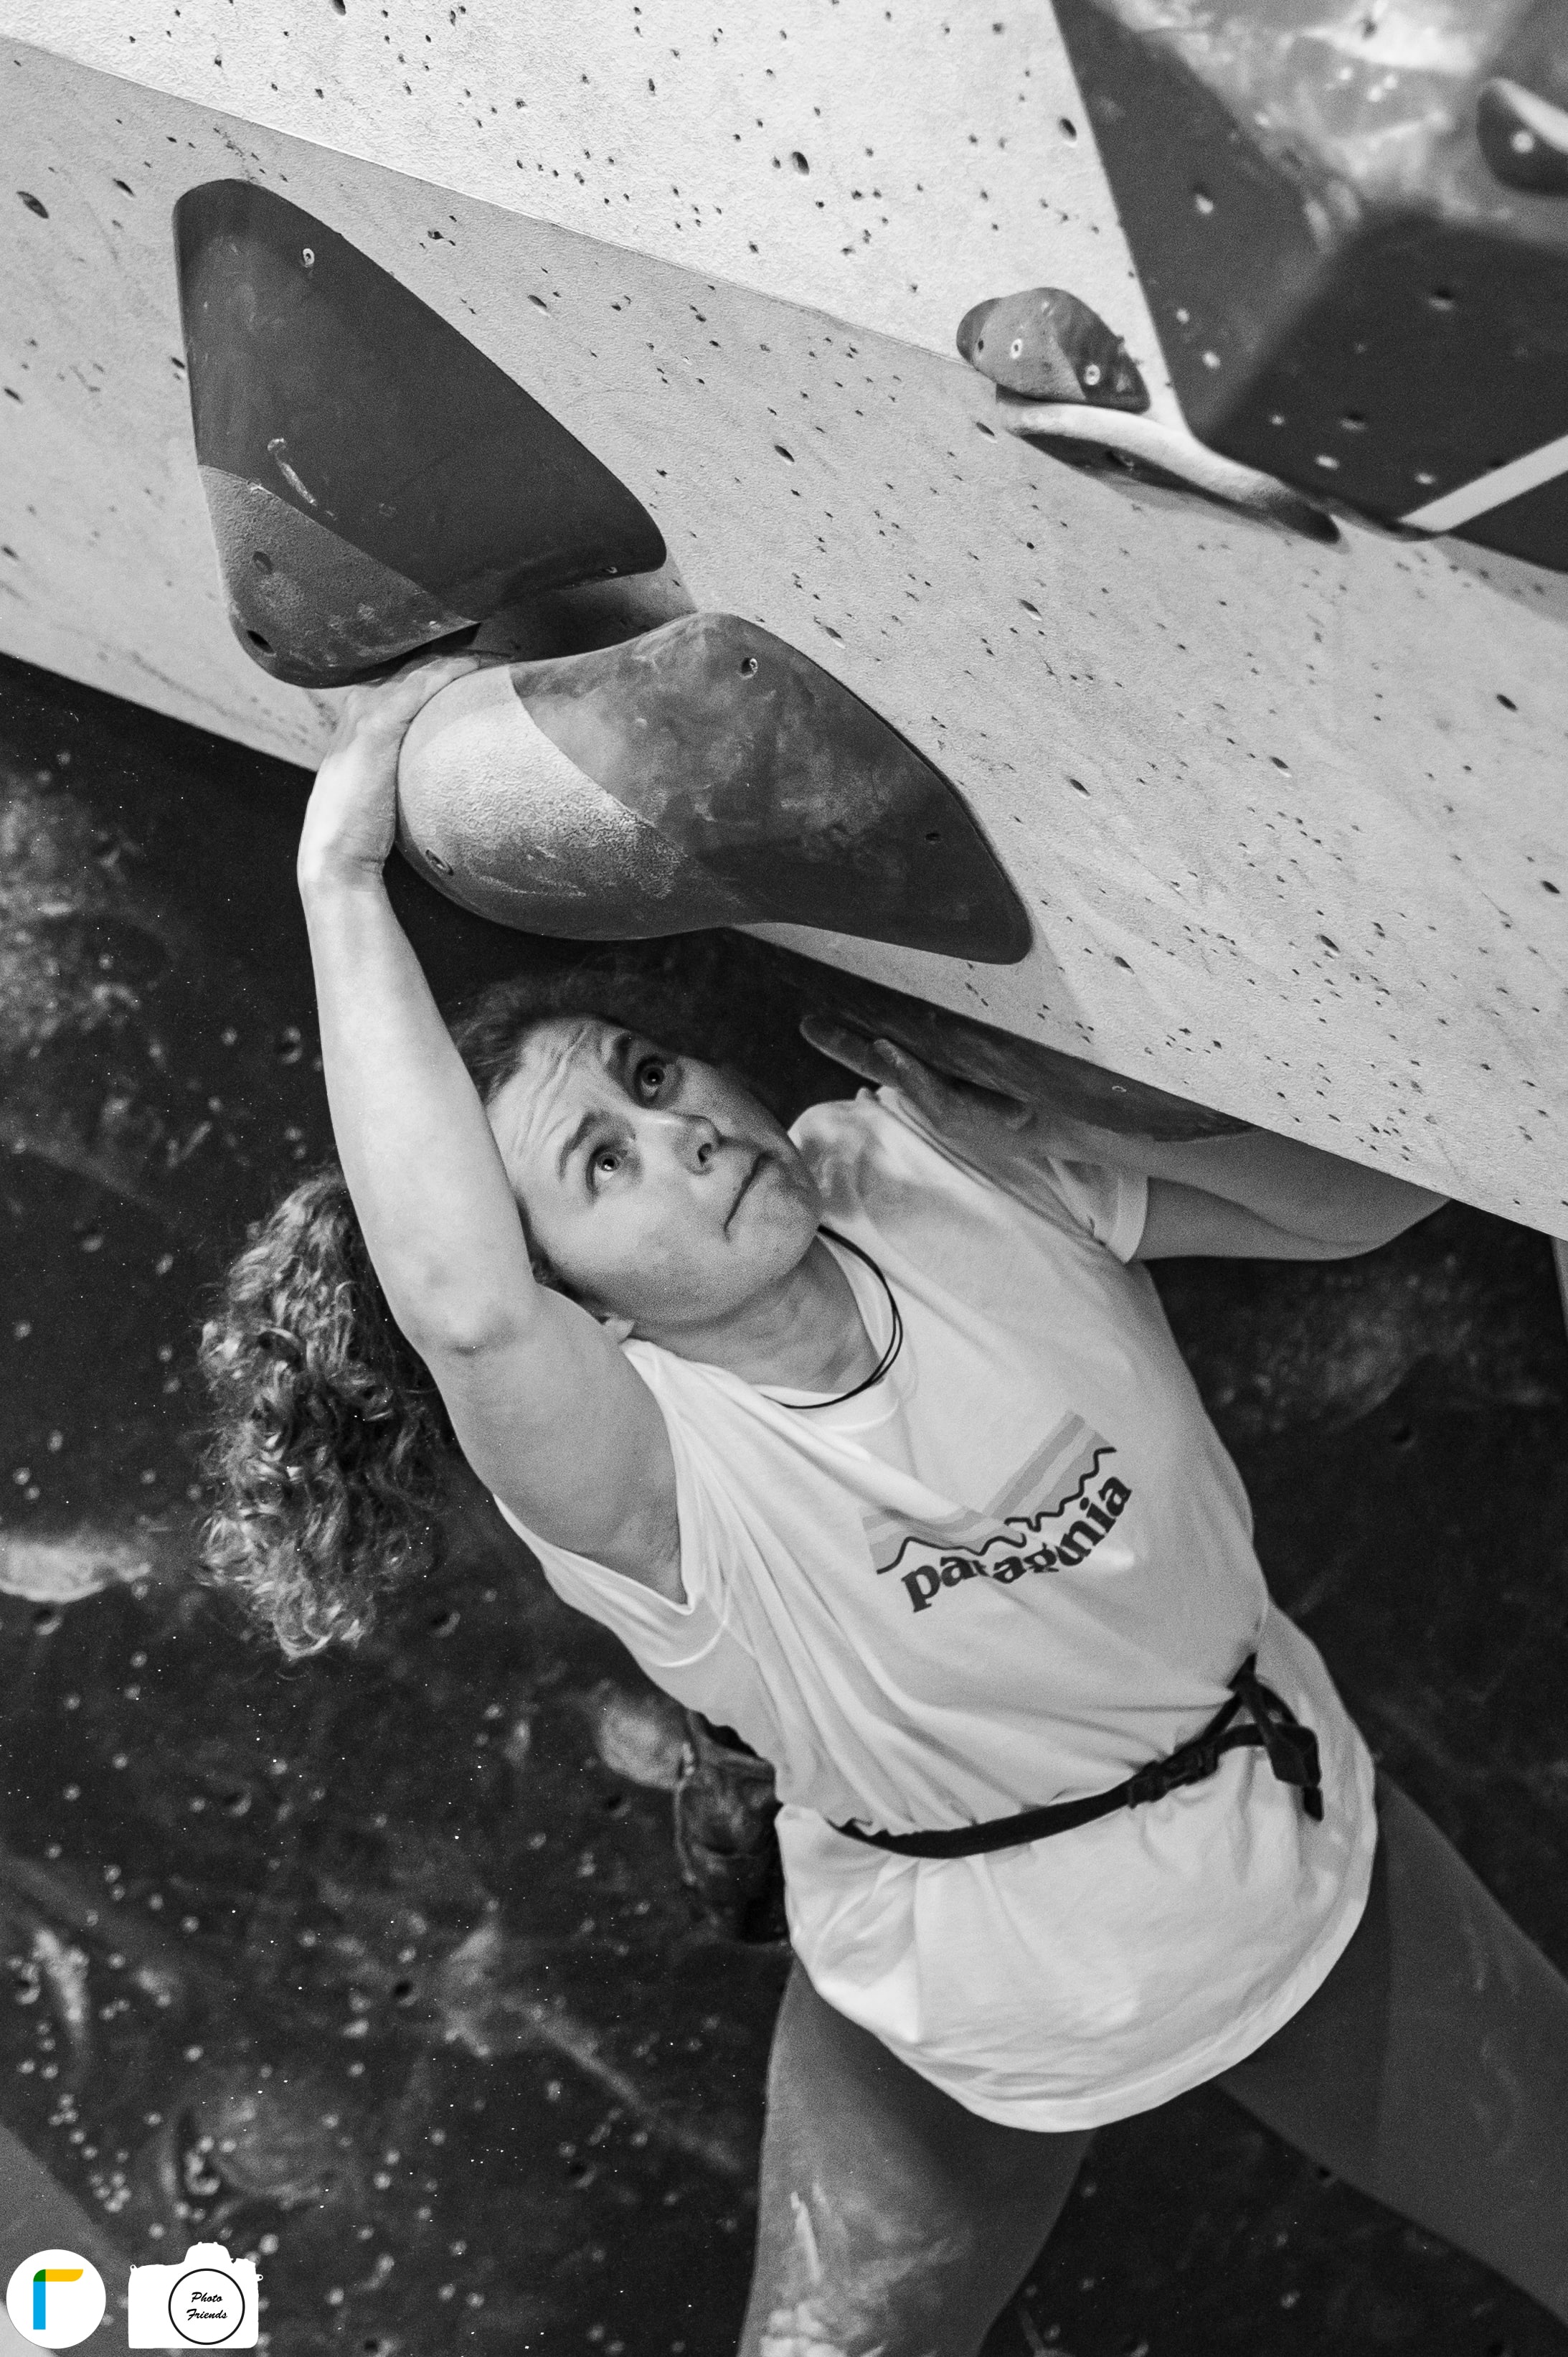 Schwarz-weiß Foto von Athletin beim Bouldern im Wettkampf